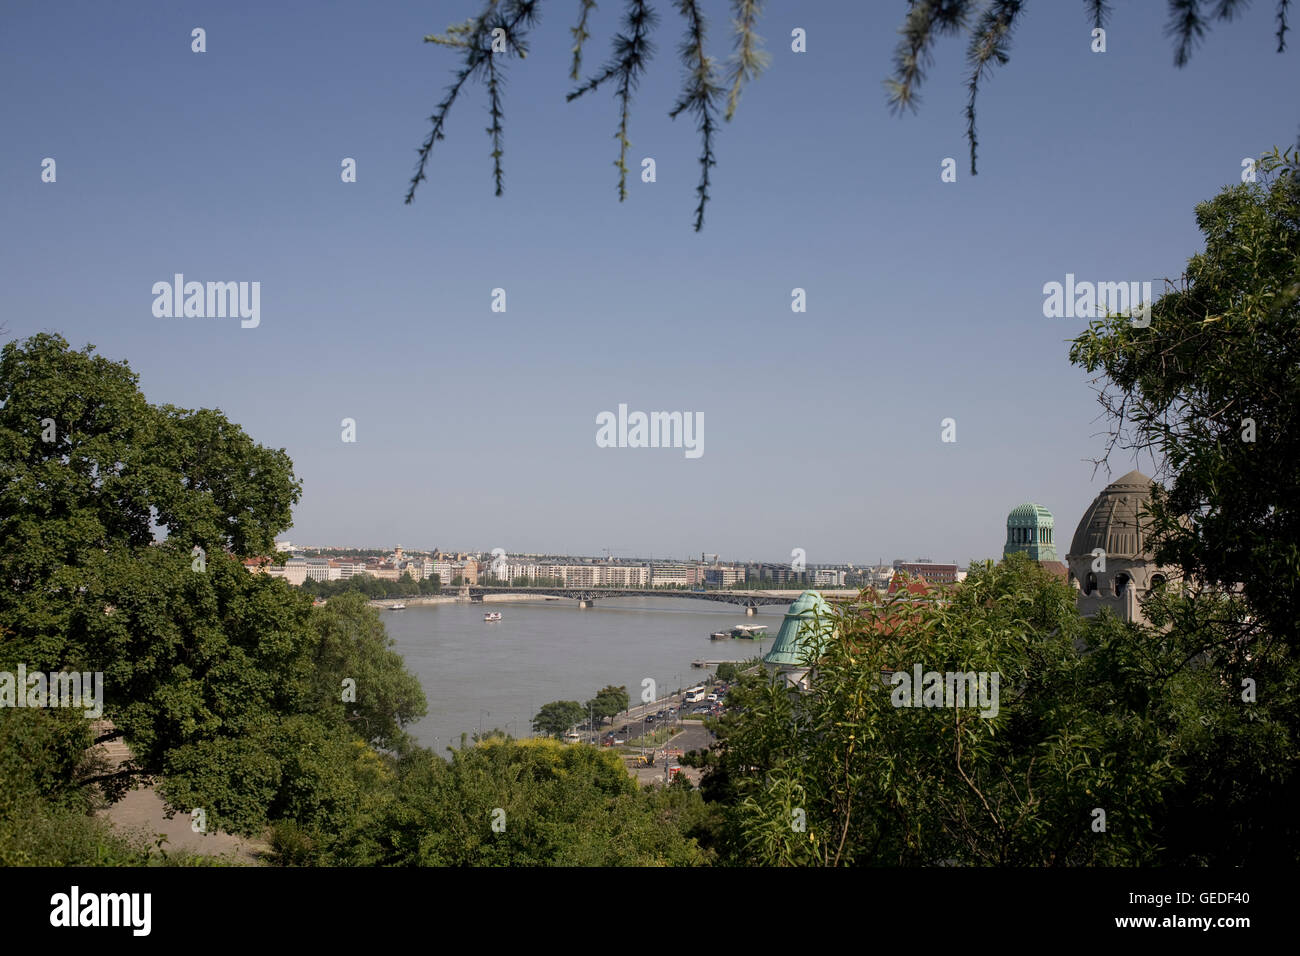 Petofi ponte sul fiume Danubio visto dal Parco sulla Collina di Gellert Foto Stock